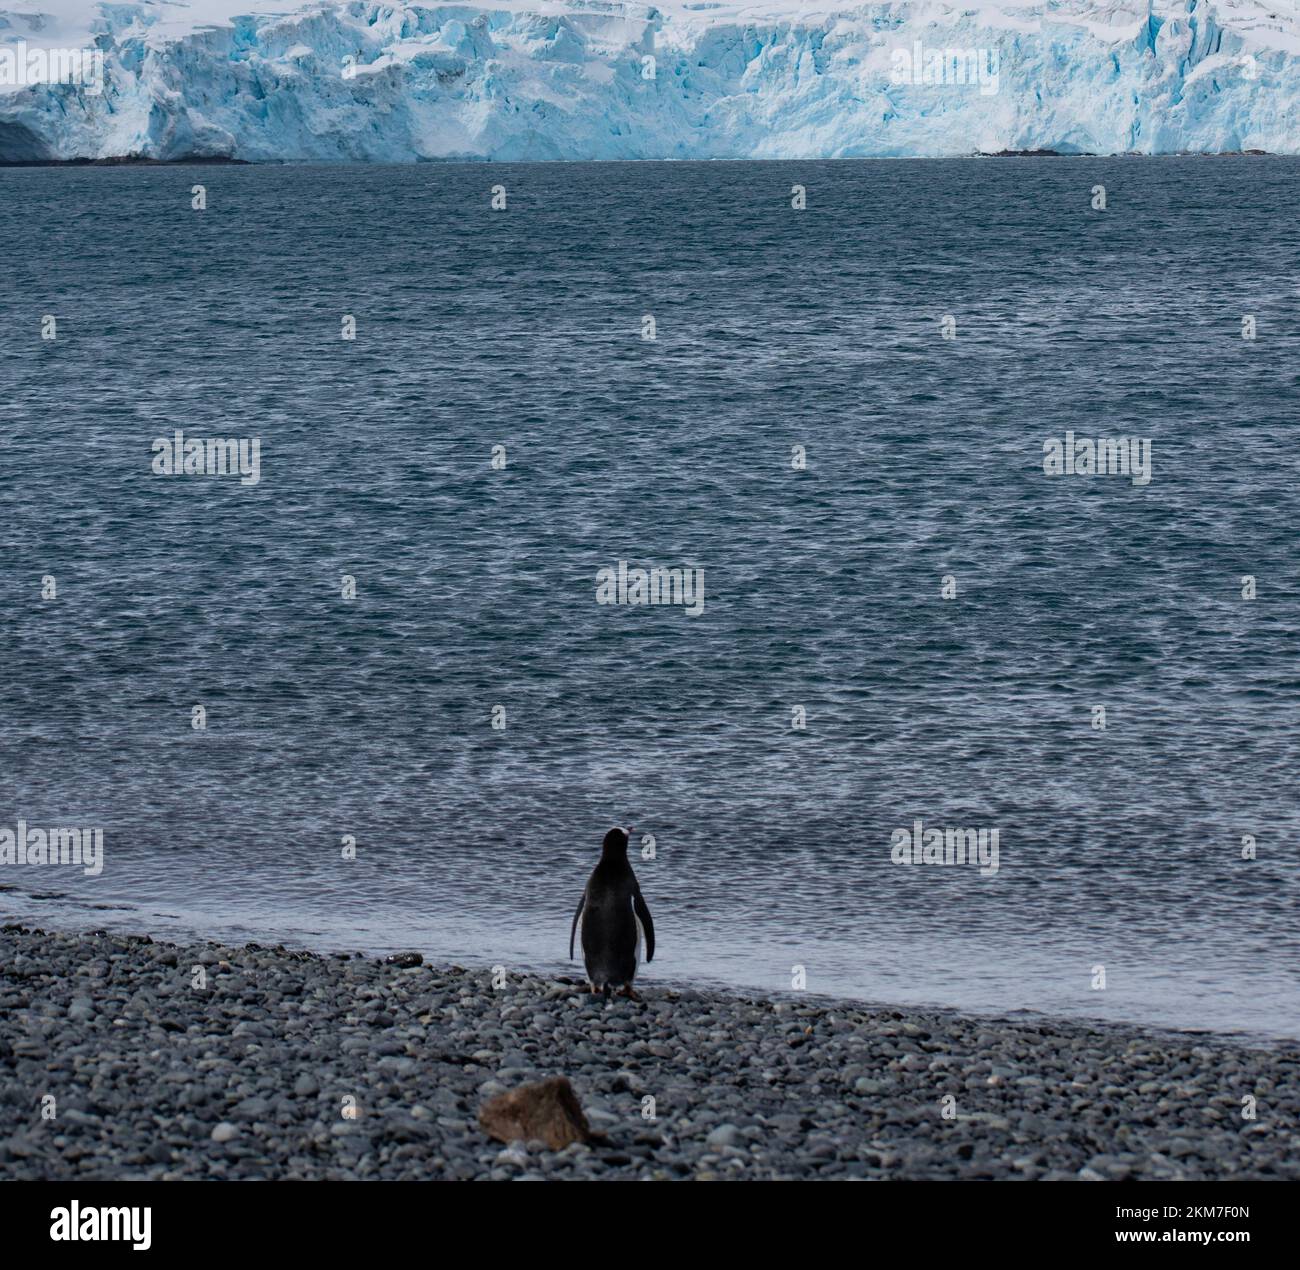 Ein einzelner Gentoo-Pinguin, der auf einem Kieselstrand in der Antarktis steht; mit Blick auf die Bucht von Wasser und Gletscher in einem ergreifenden Bild. Stockfoto